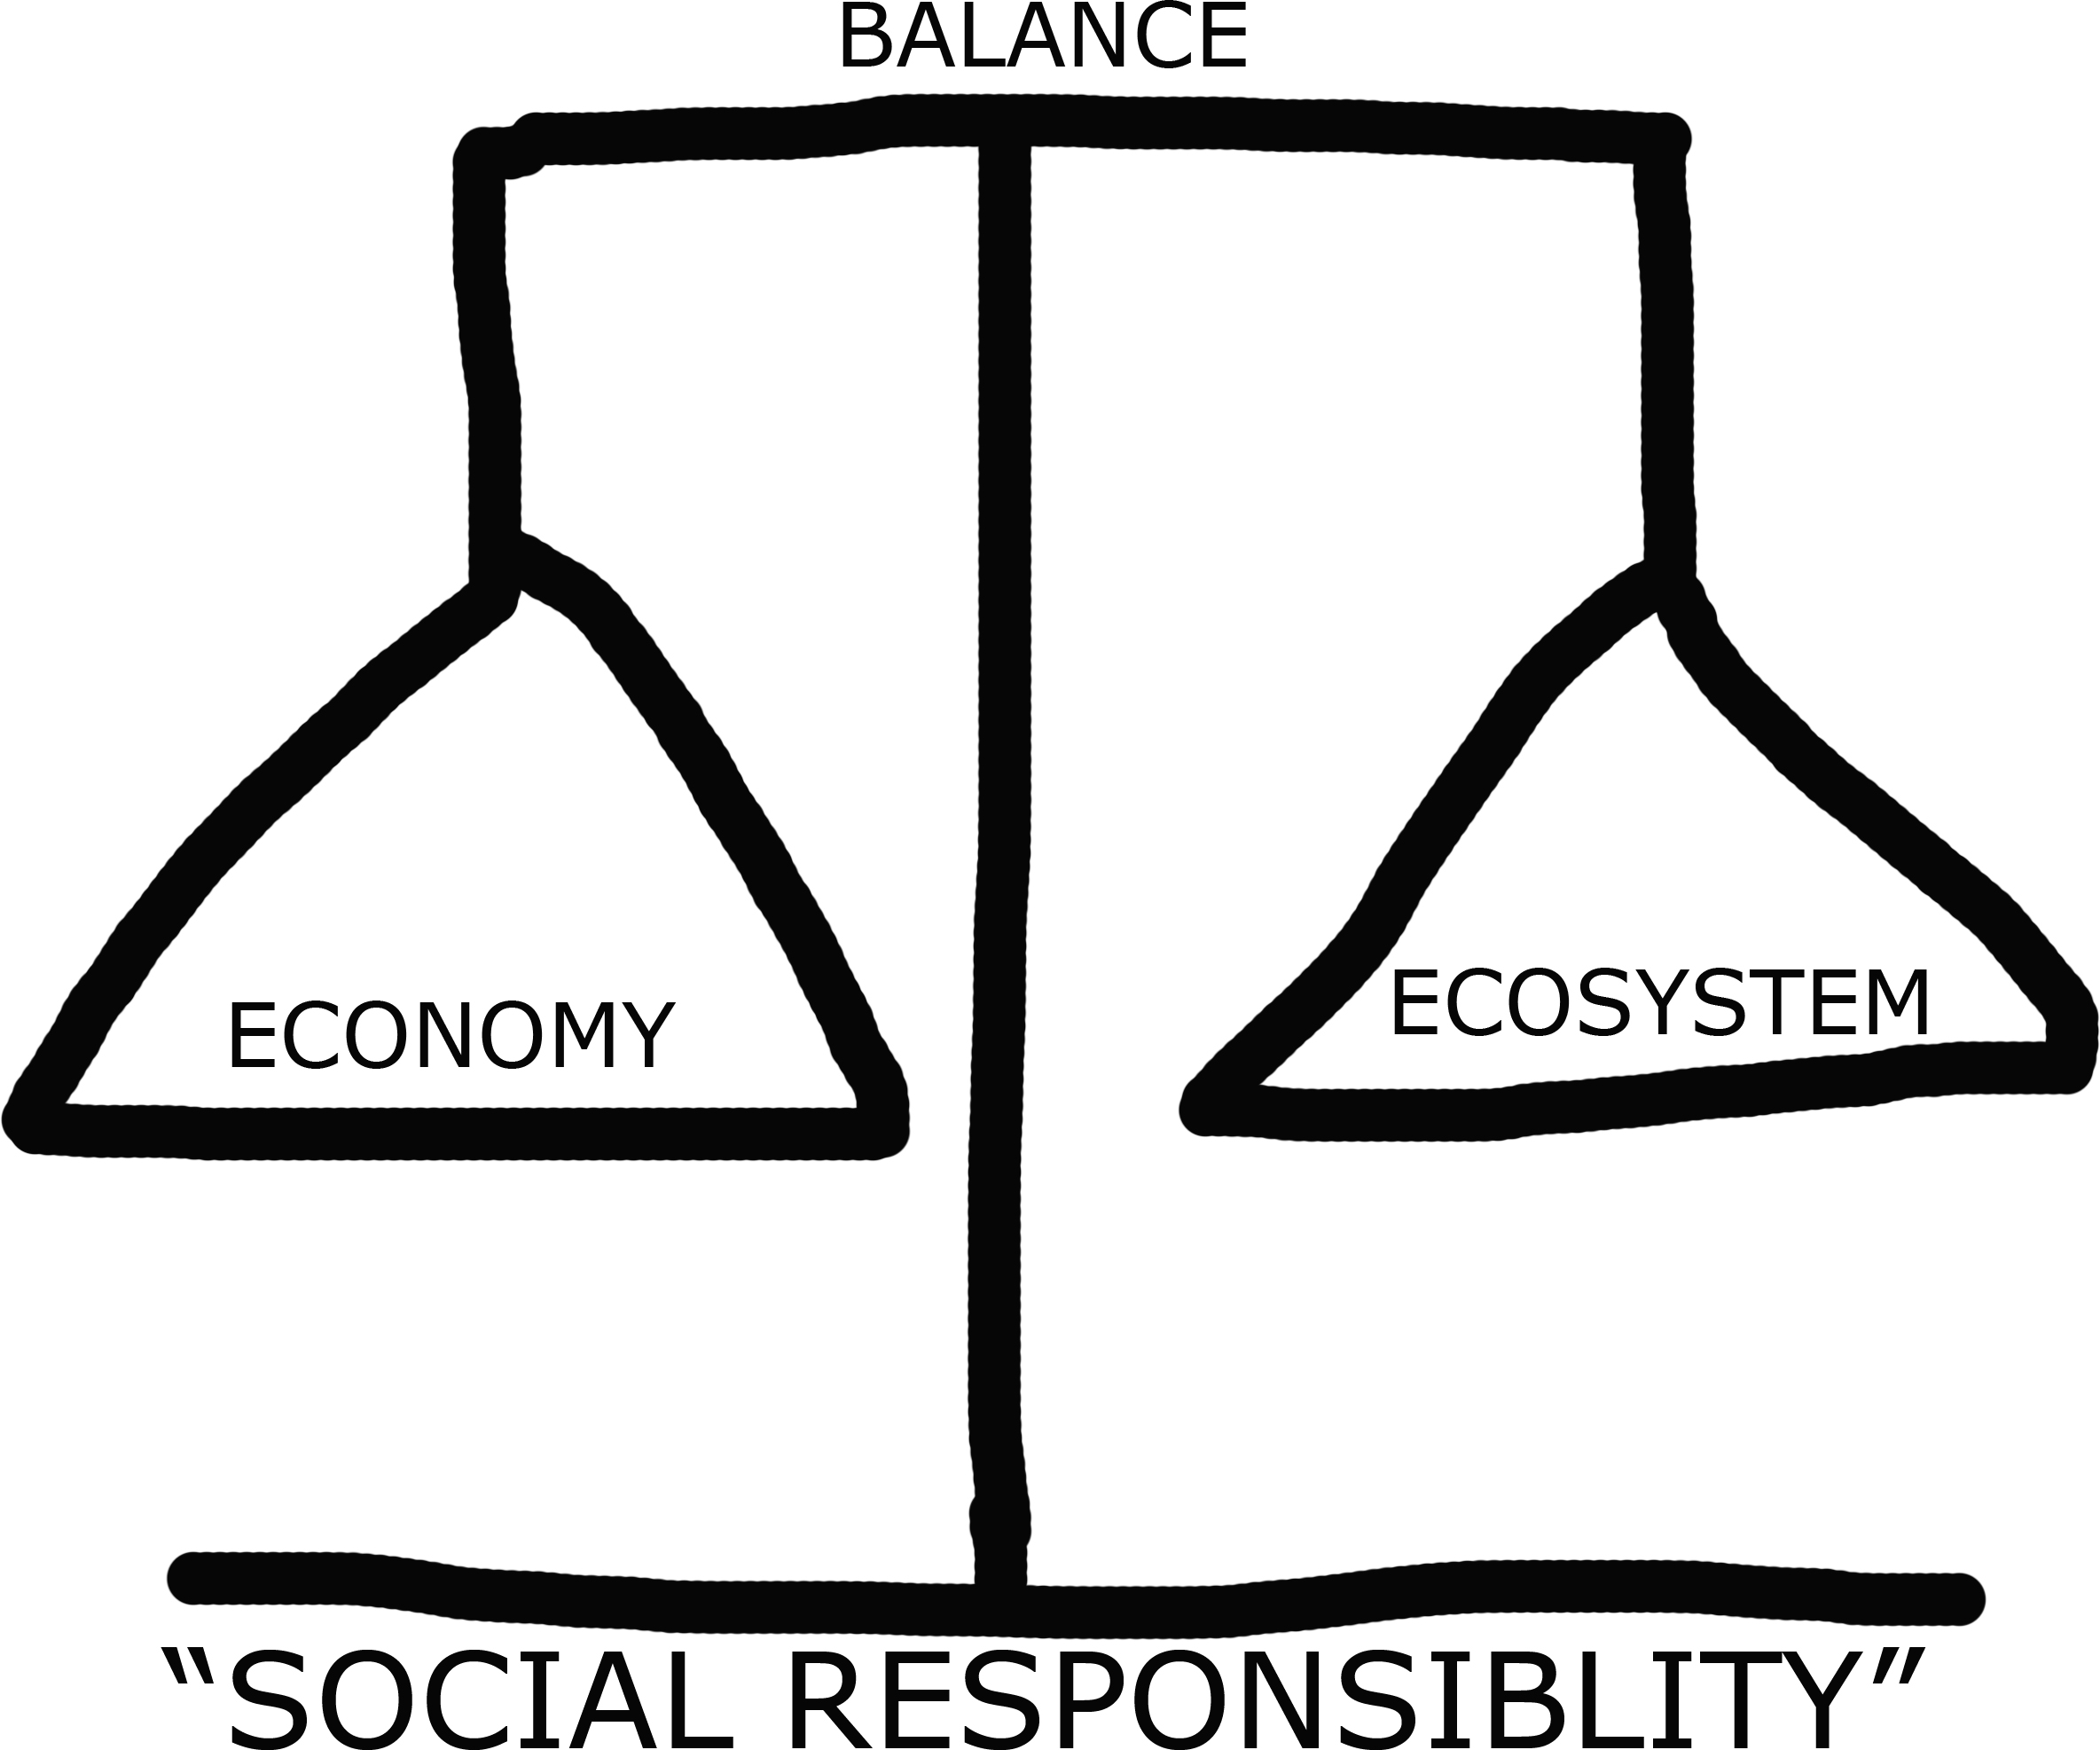 Individual social responsibility